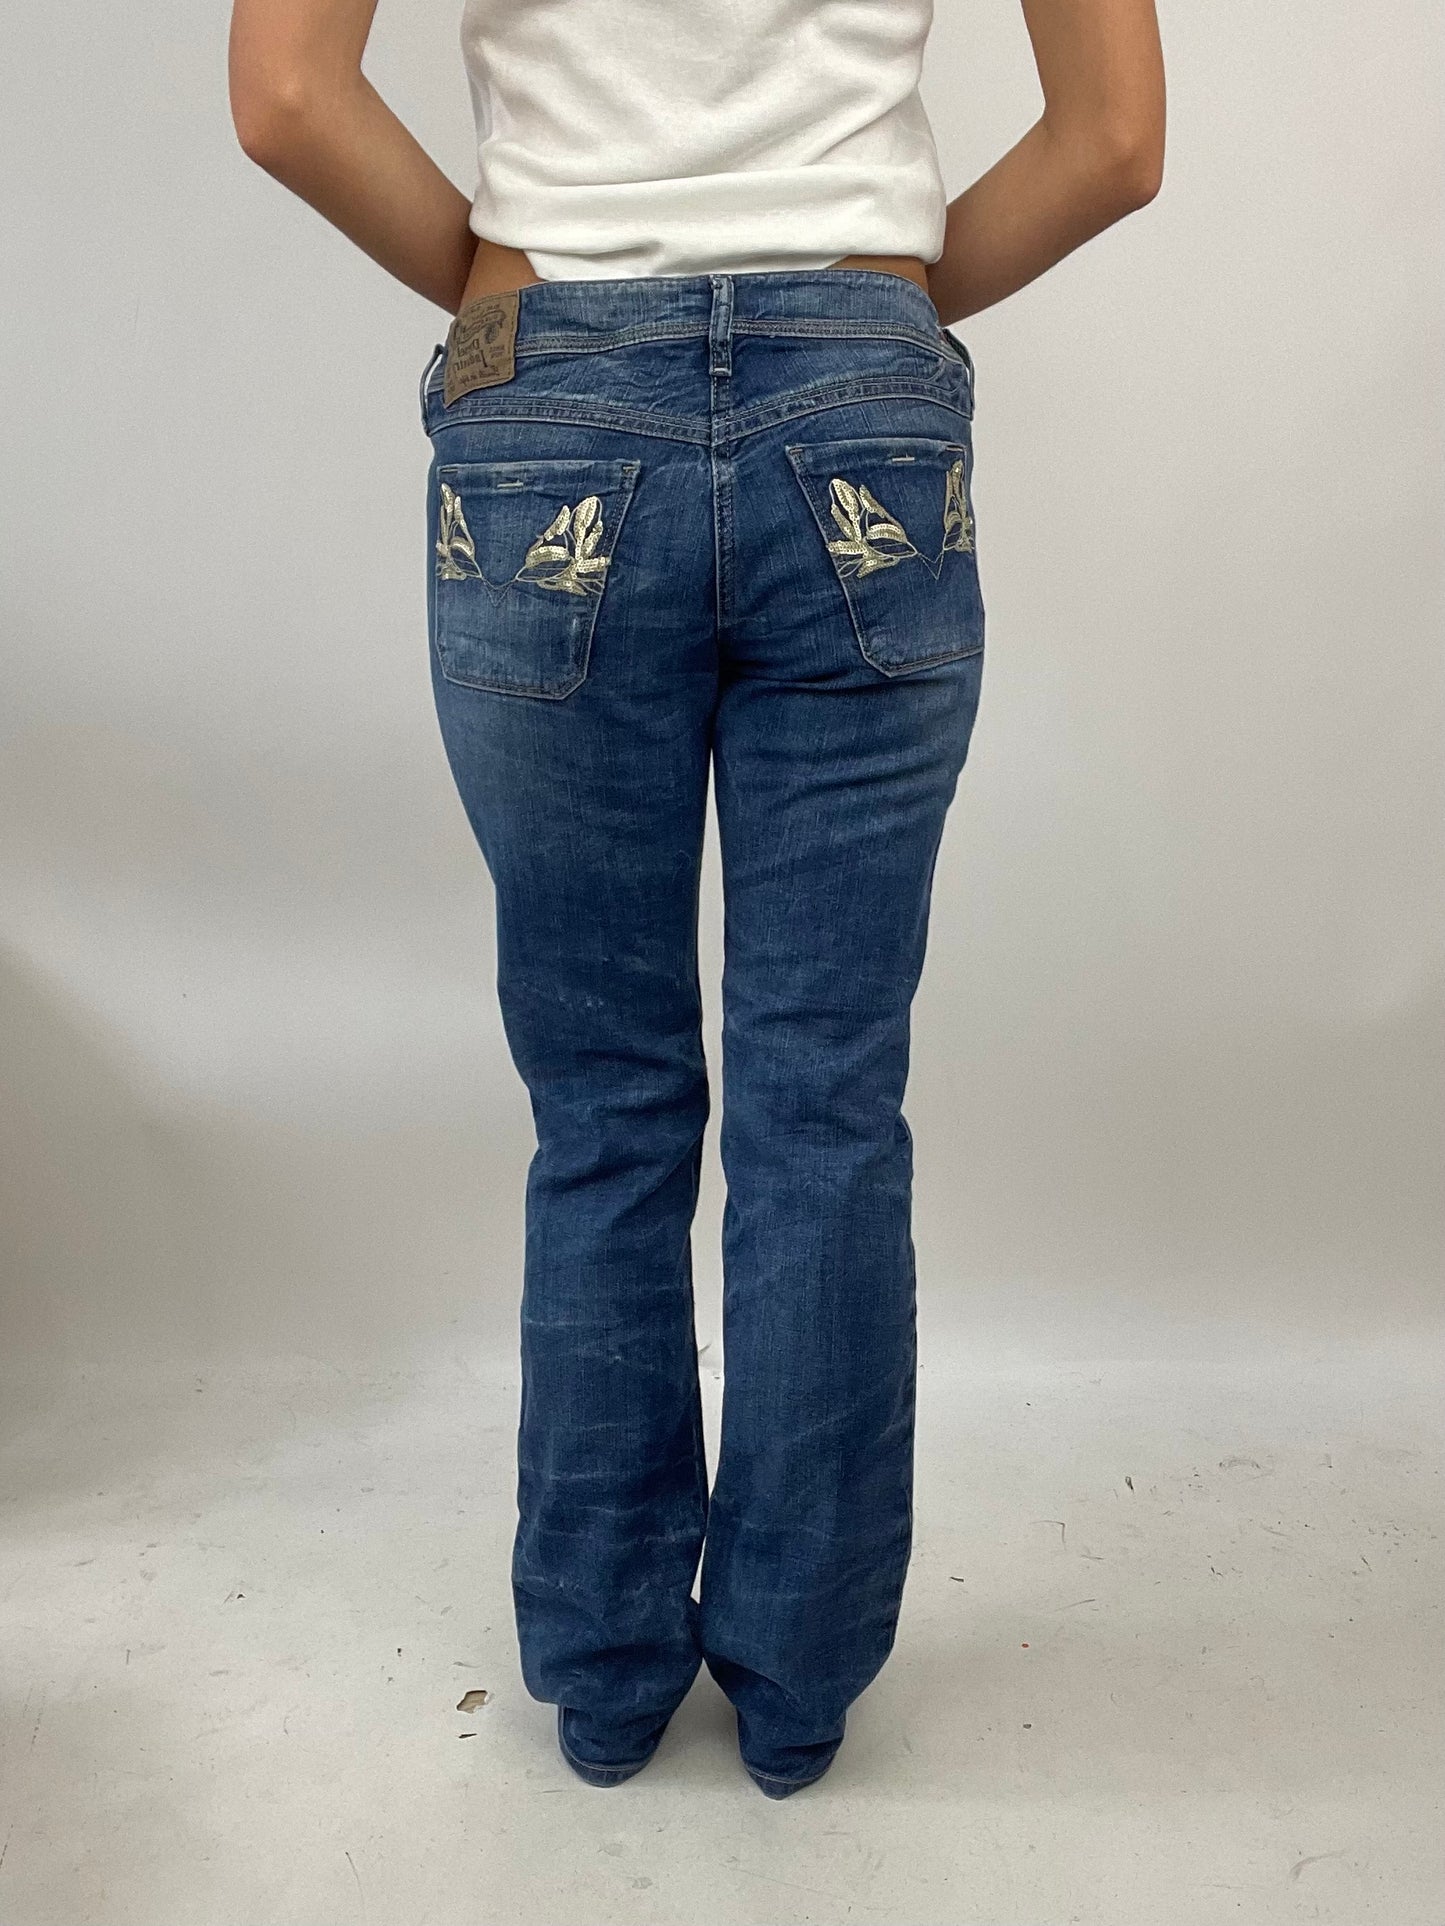 ADDISON RAE DROP | small dark denim diesel flared stretchy jeans